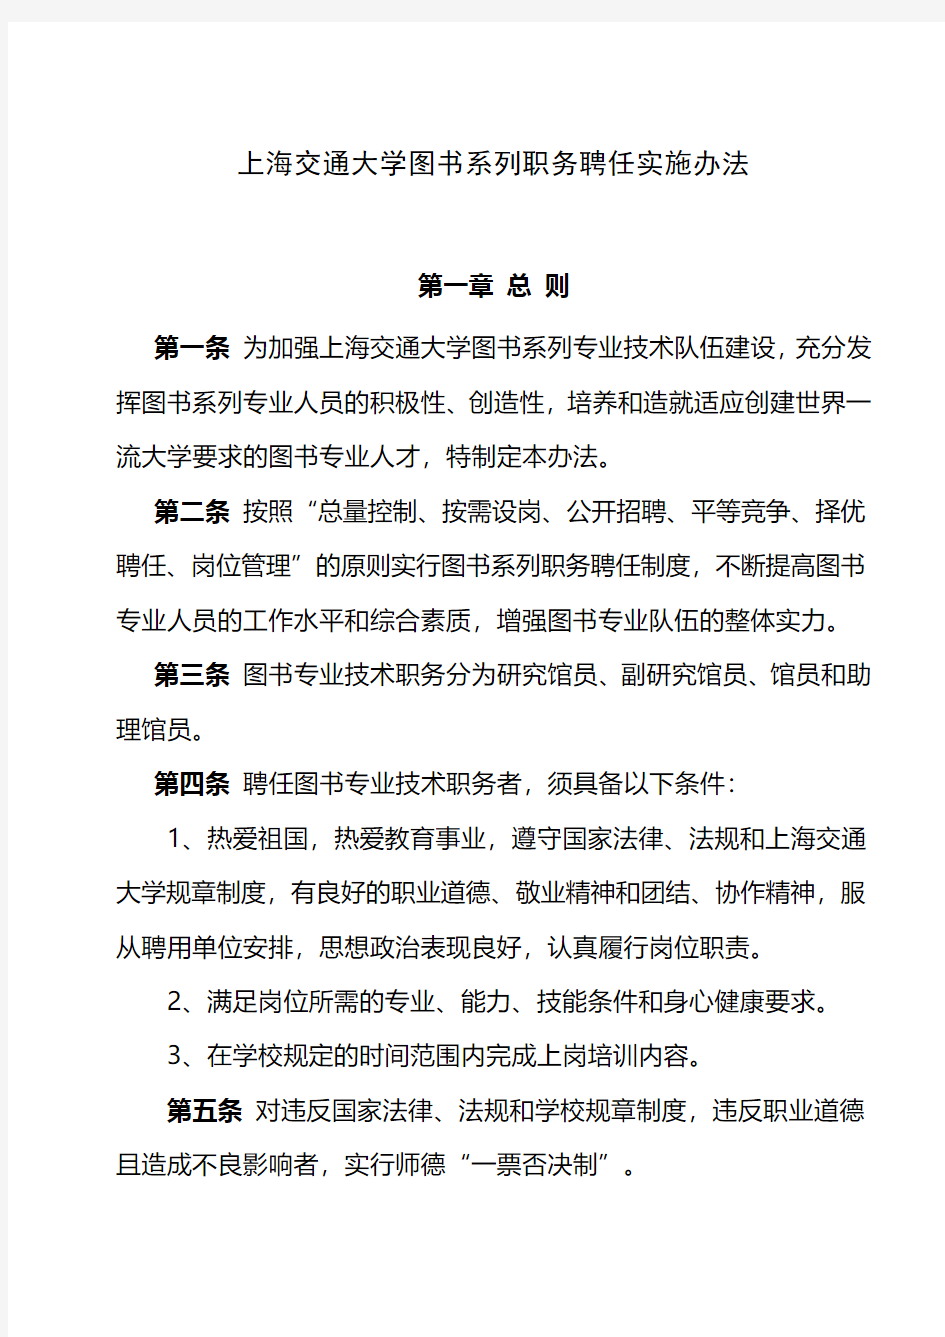 上海交通大学图书系列职务聘任实施办法